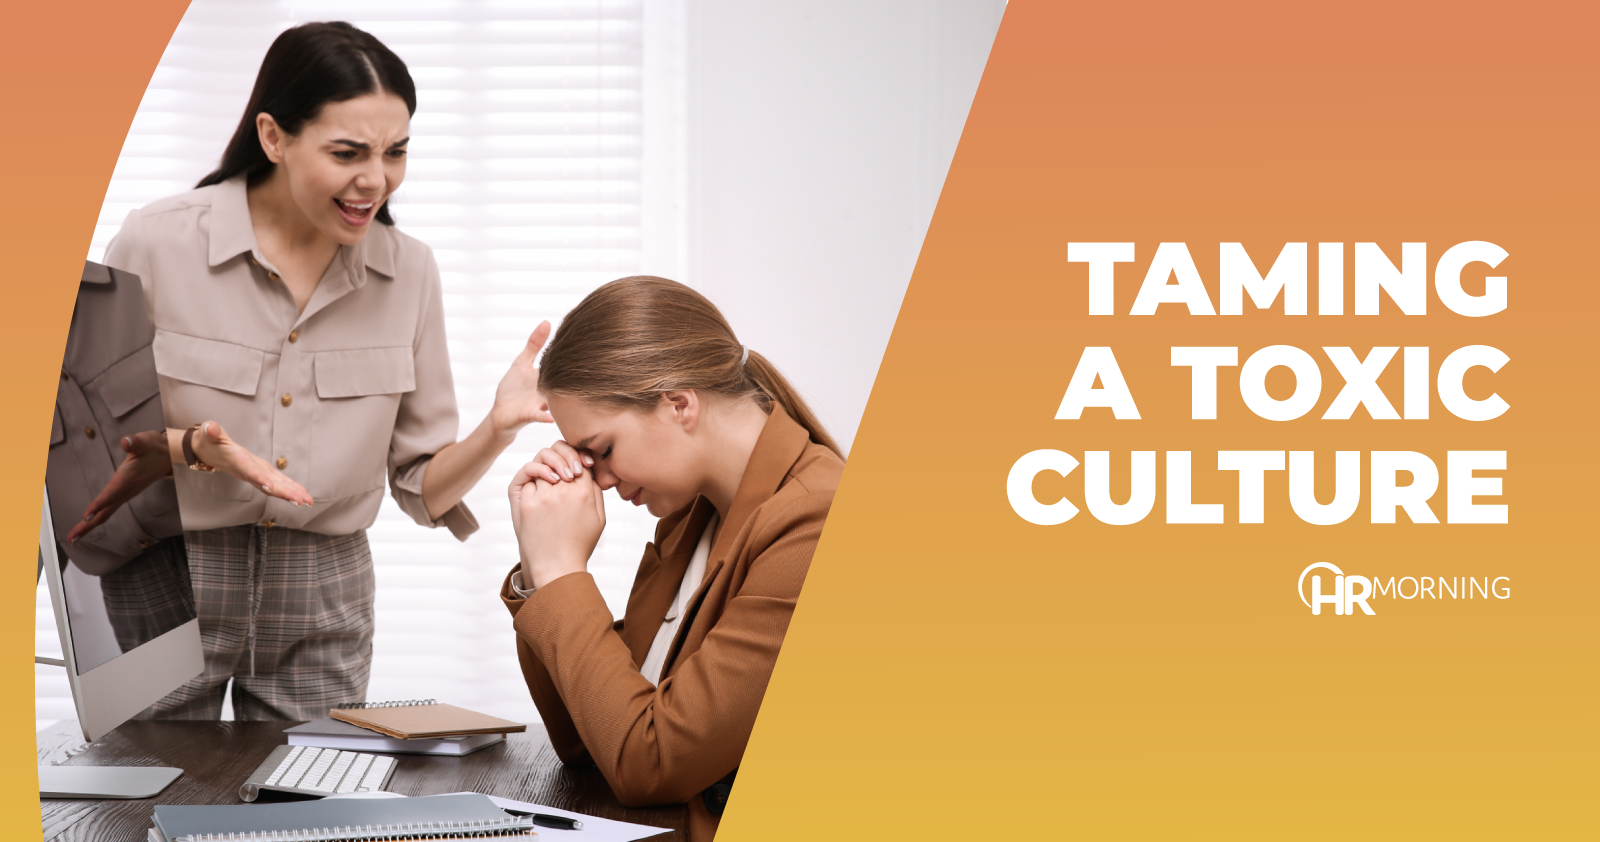 Taming a toxic culture